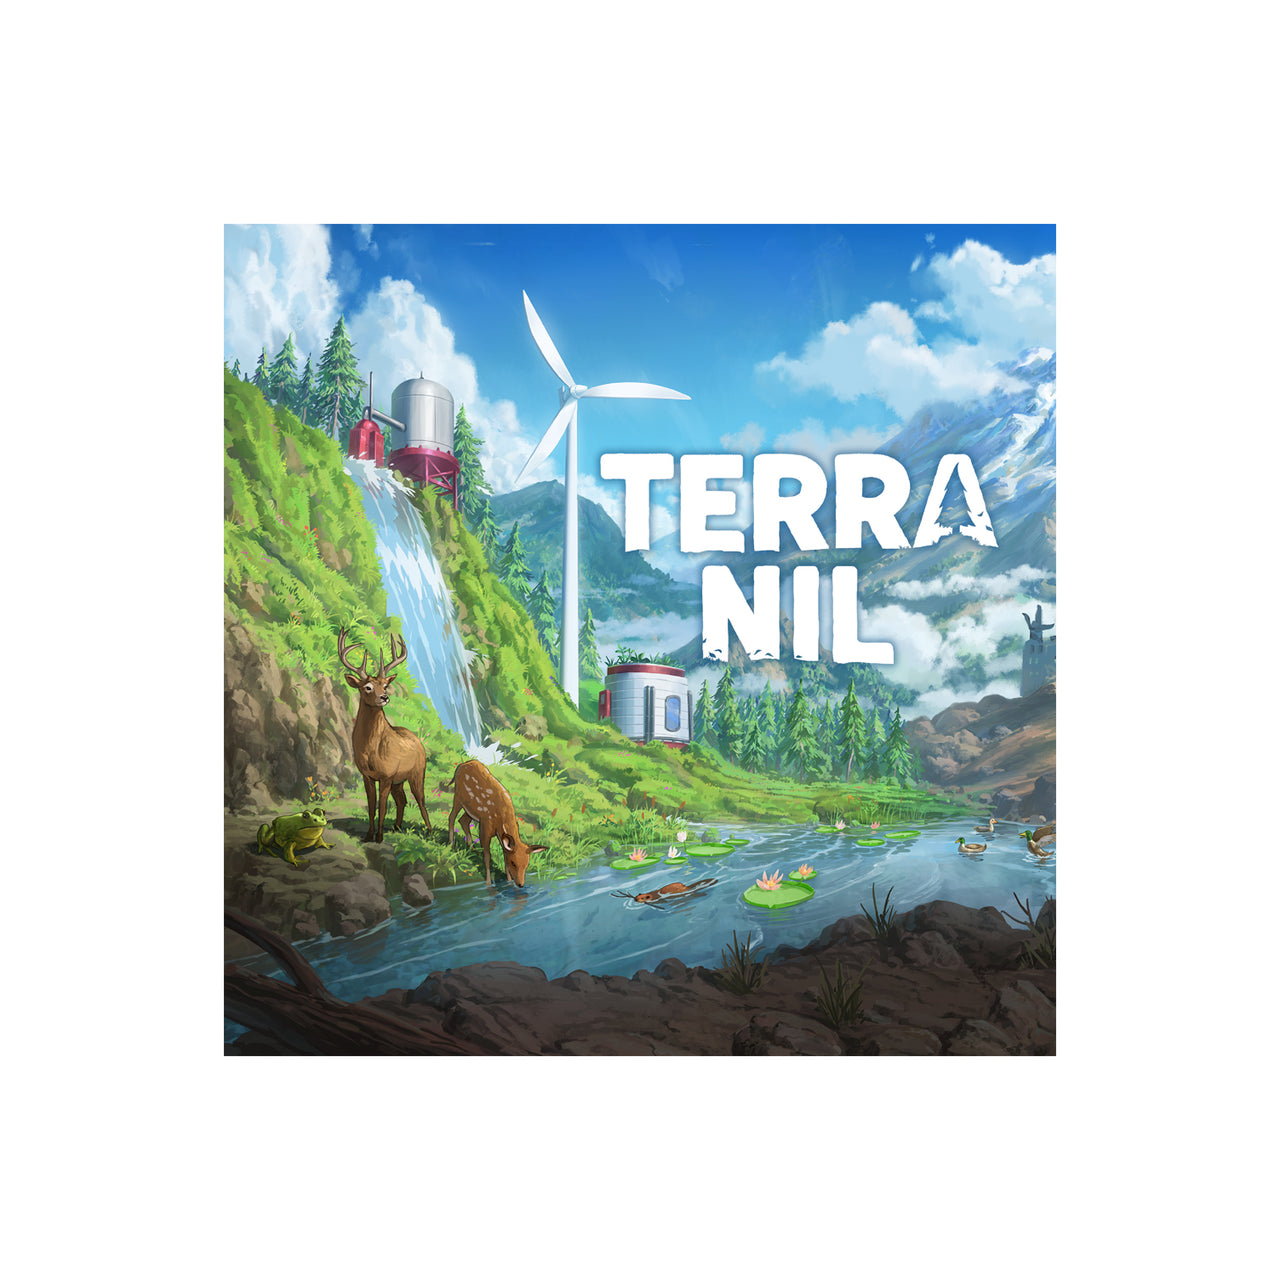 Terra Nil (Original Soundtrack)